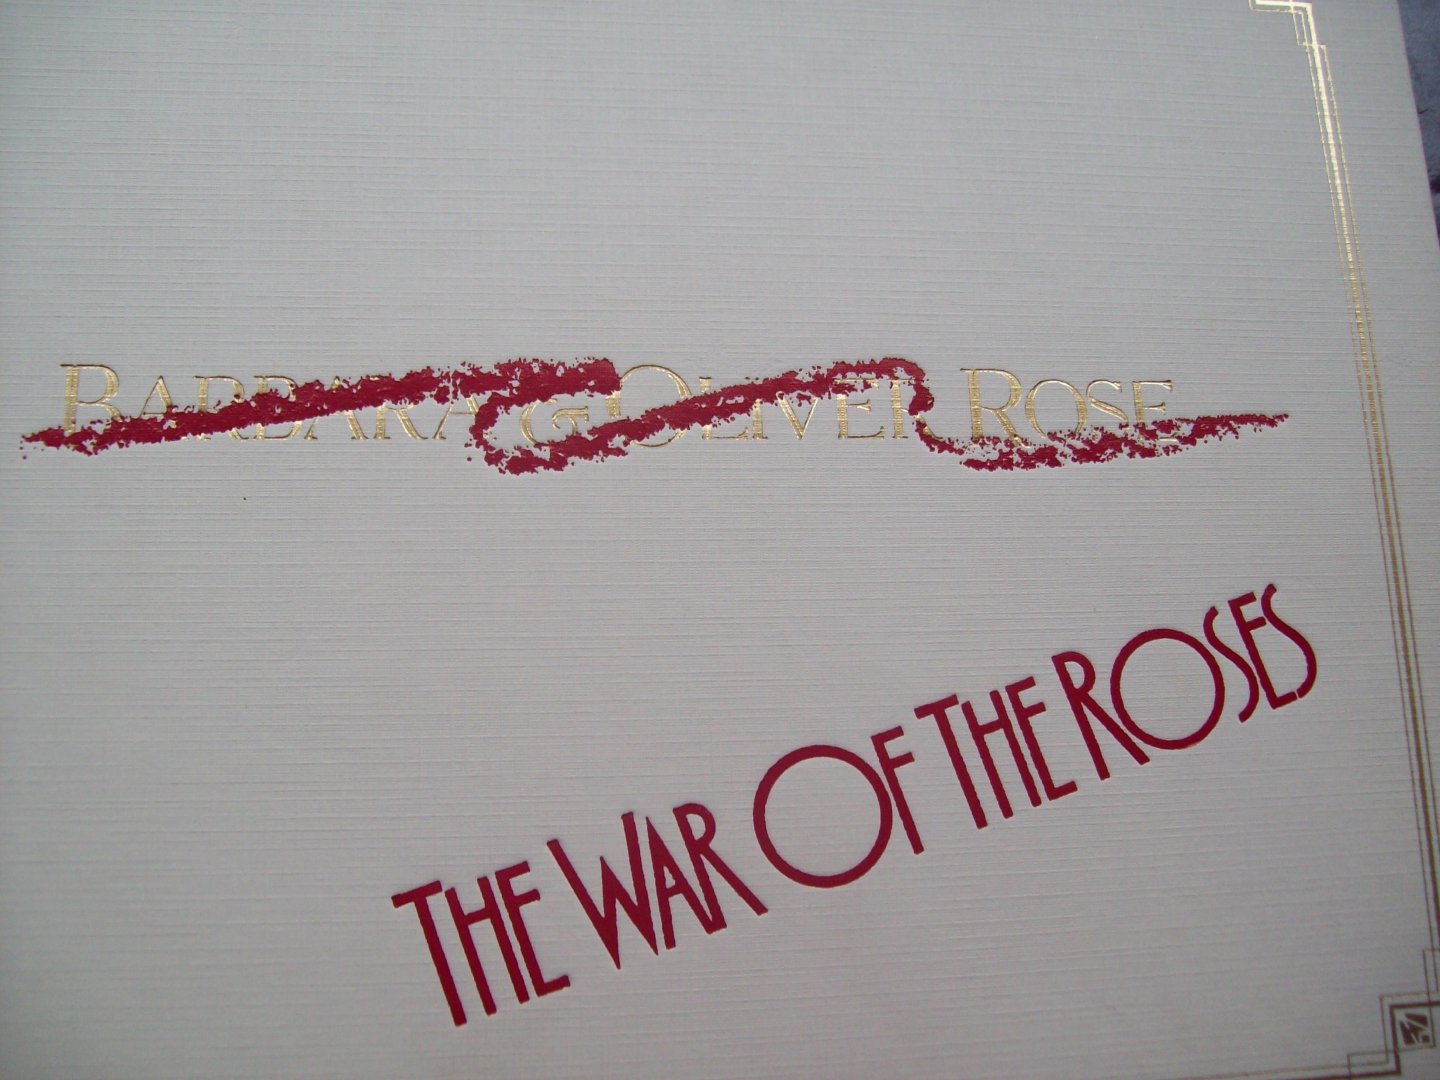 Barbara & Oliver Rose - "The War of Roses"